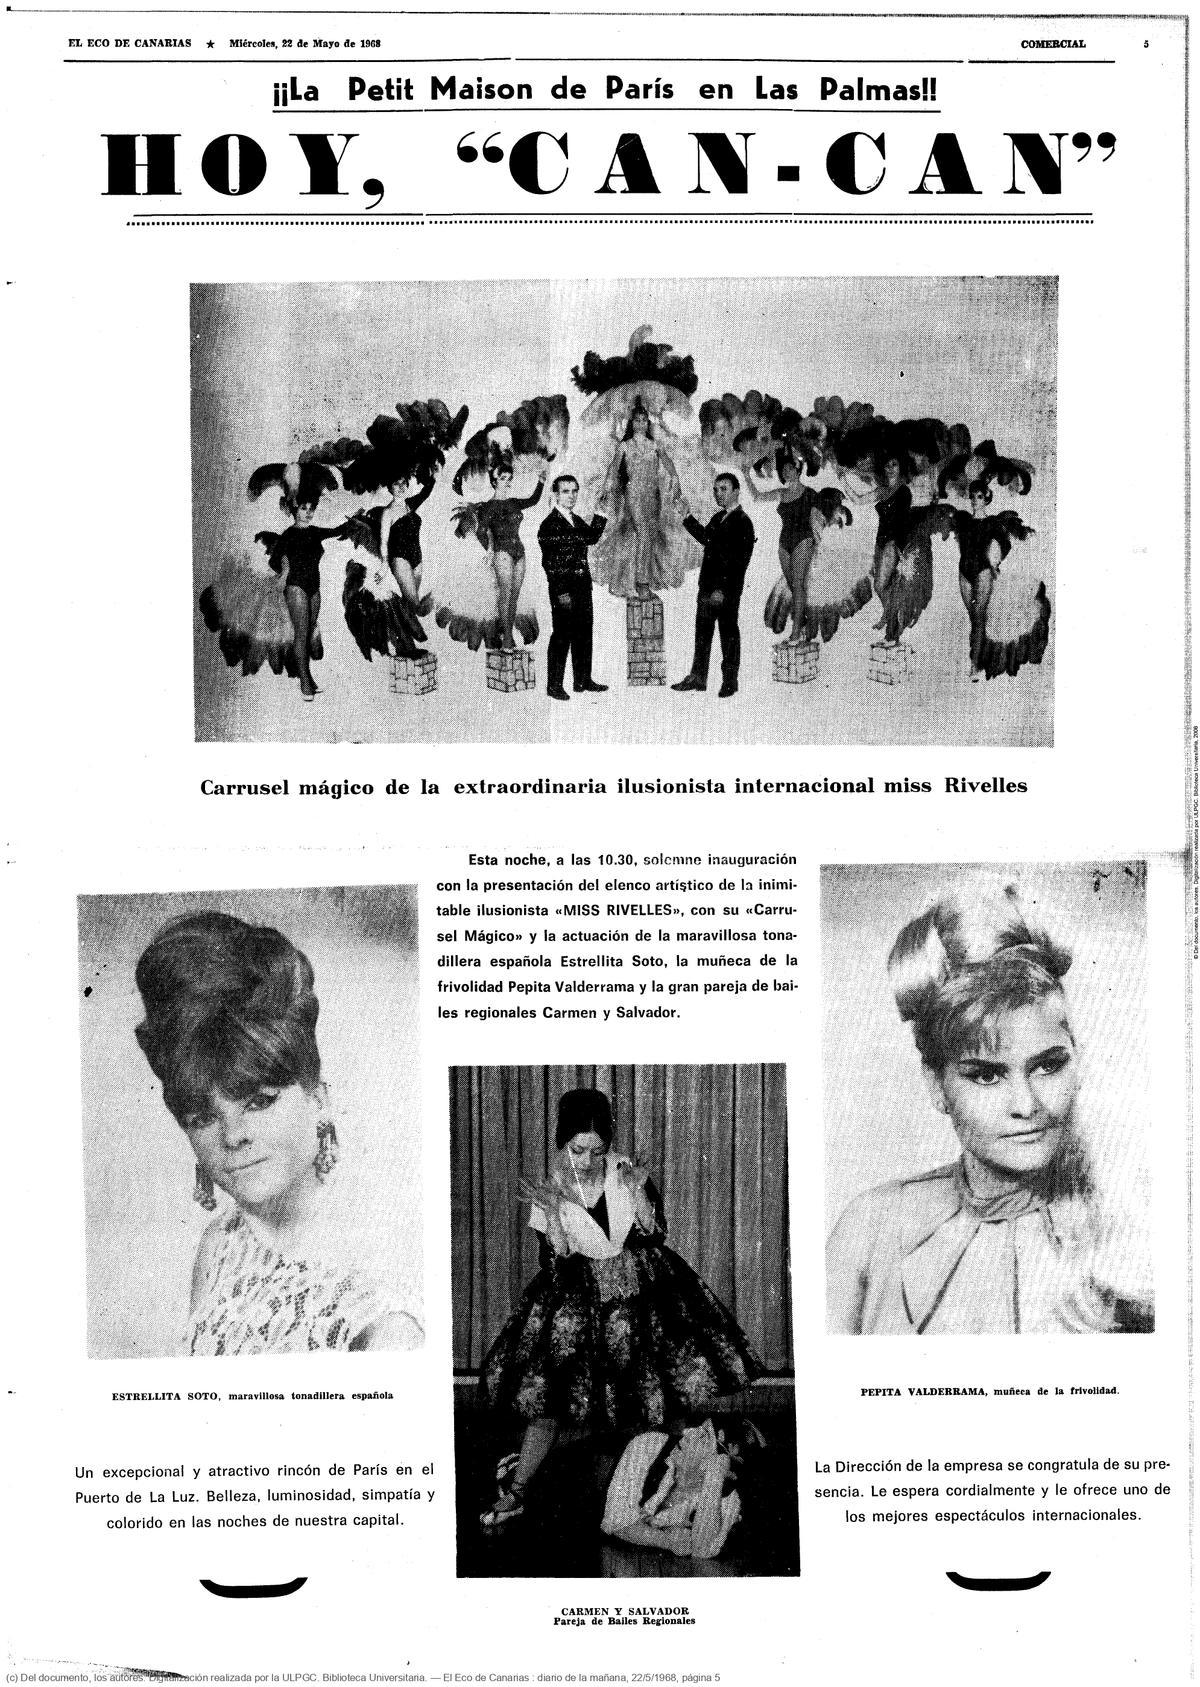 comercial en 'El Eco de Canarias' en 1968.